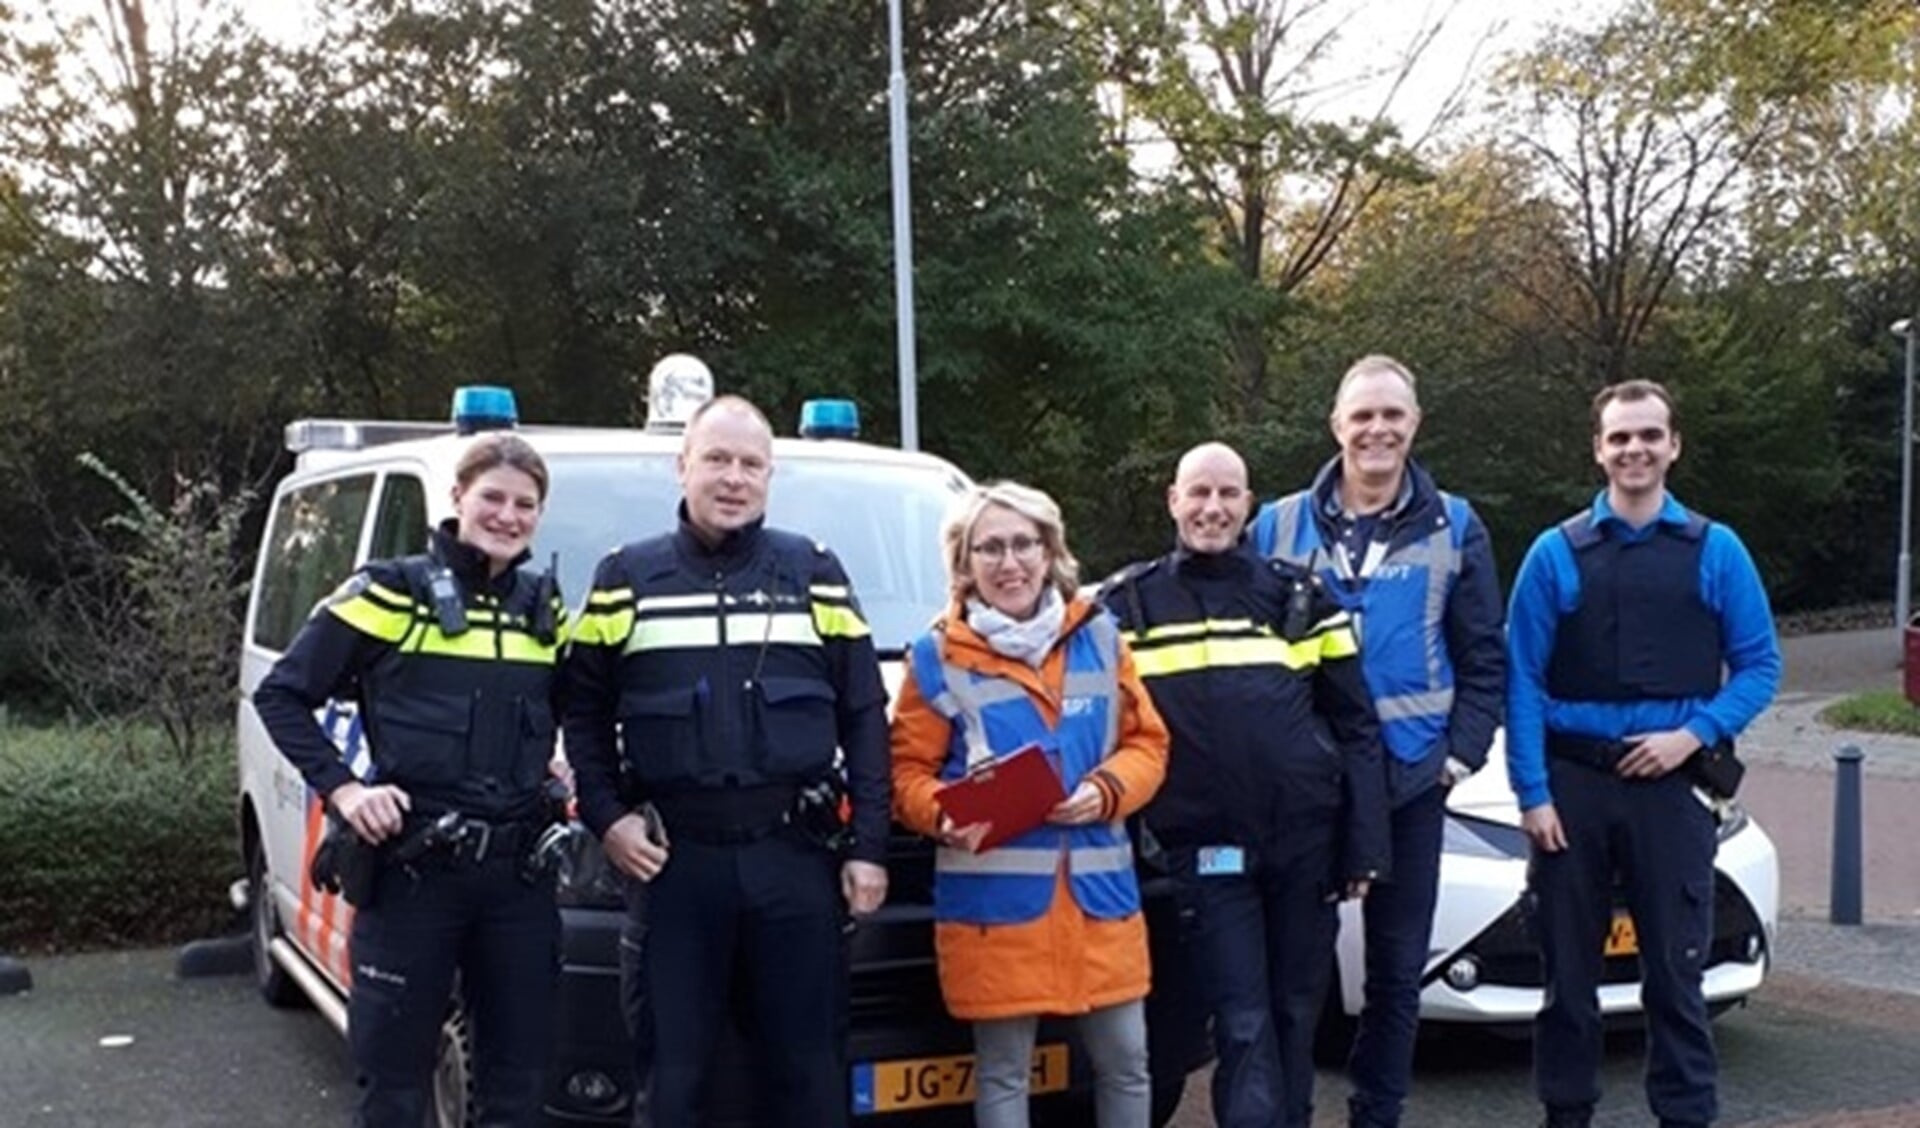 De actie werd uitgevoerd door de politie, samen met het buurtpreventieteam Essesteijn, handhavers van de gemeente en politievrijwilligers.